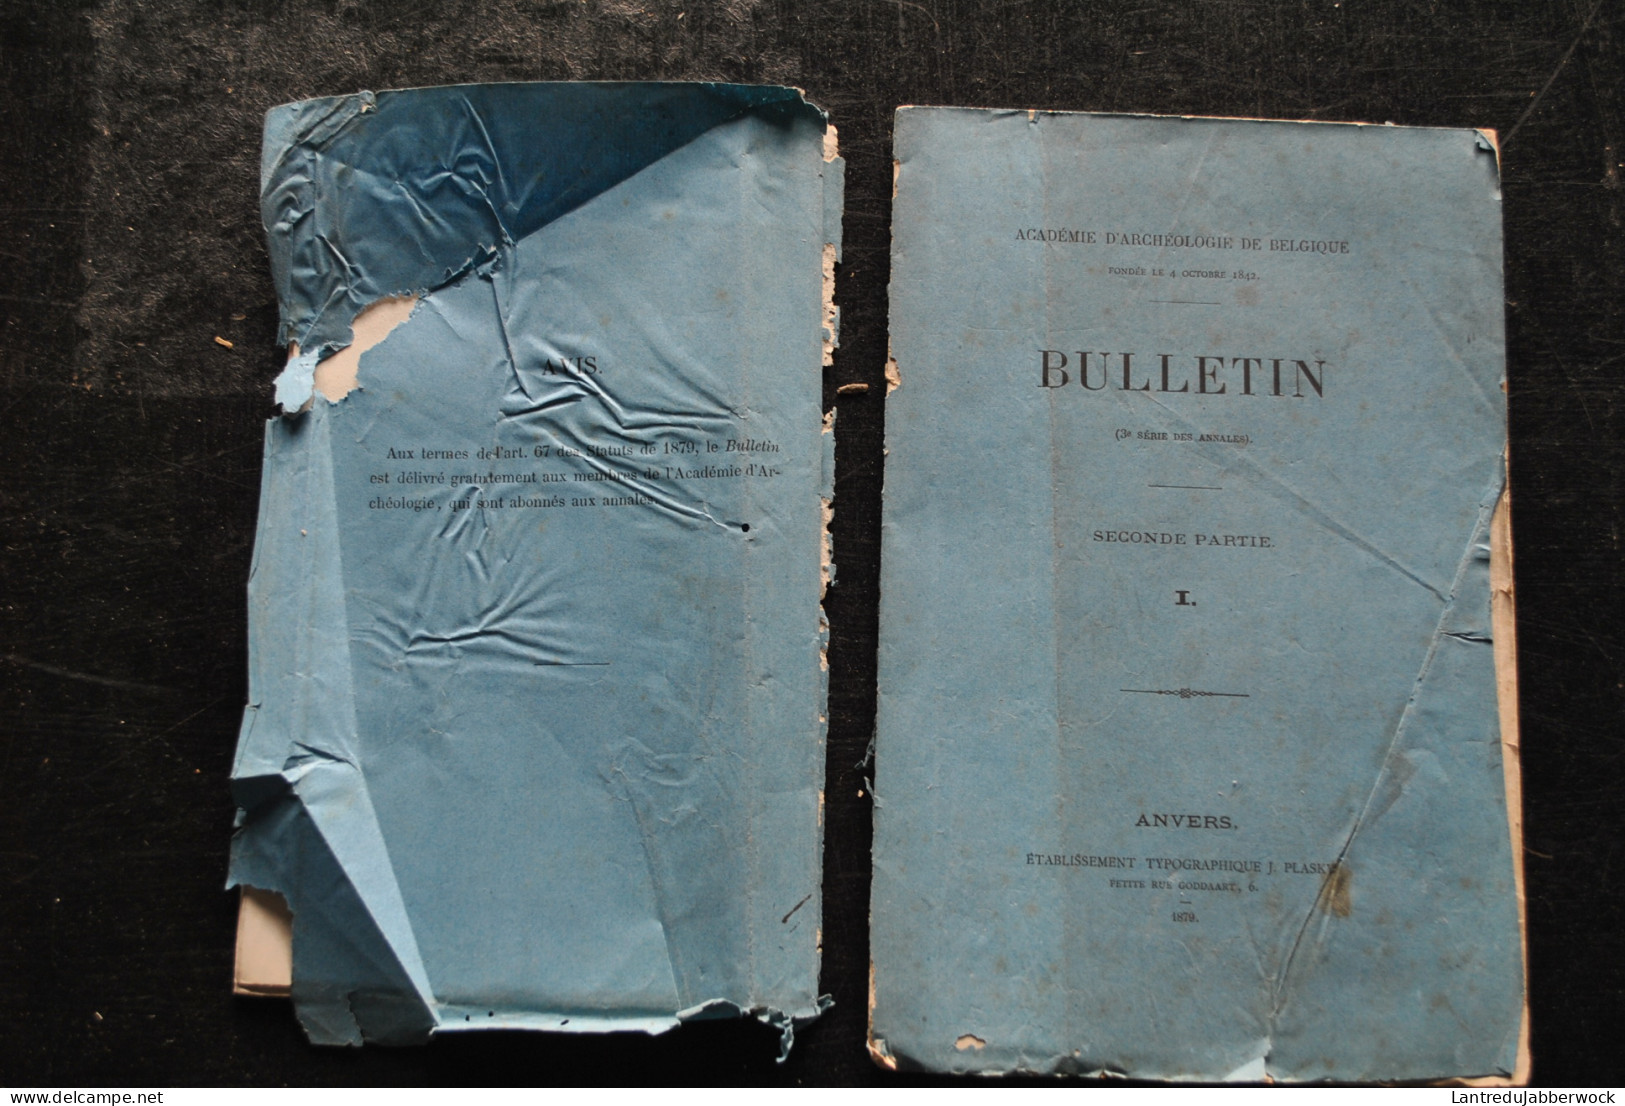 Académie D'archéologie De Belgique Bulletin 2è Partie 1 1879 La Tour Bleue D'Anvers Colonel WAUWERMANS + Plans Cartes  - Belgium